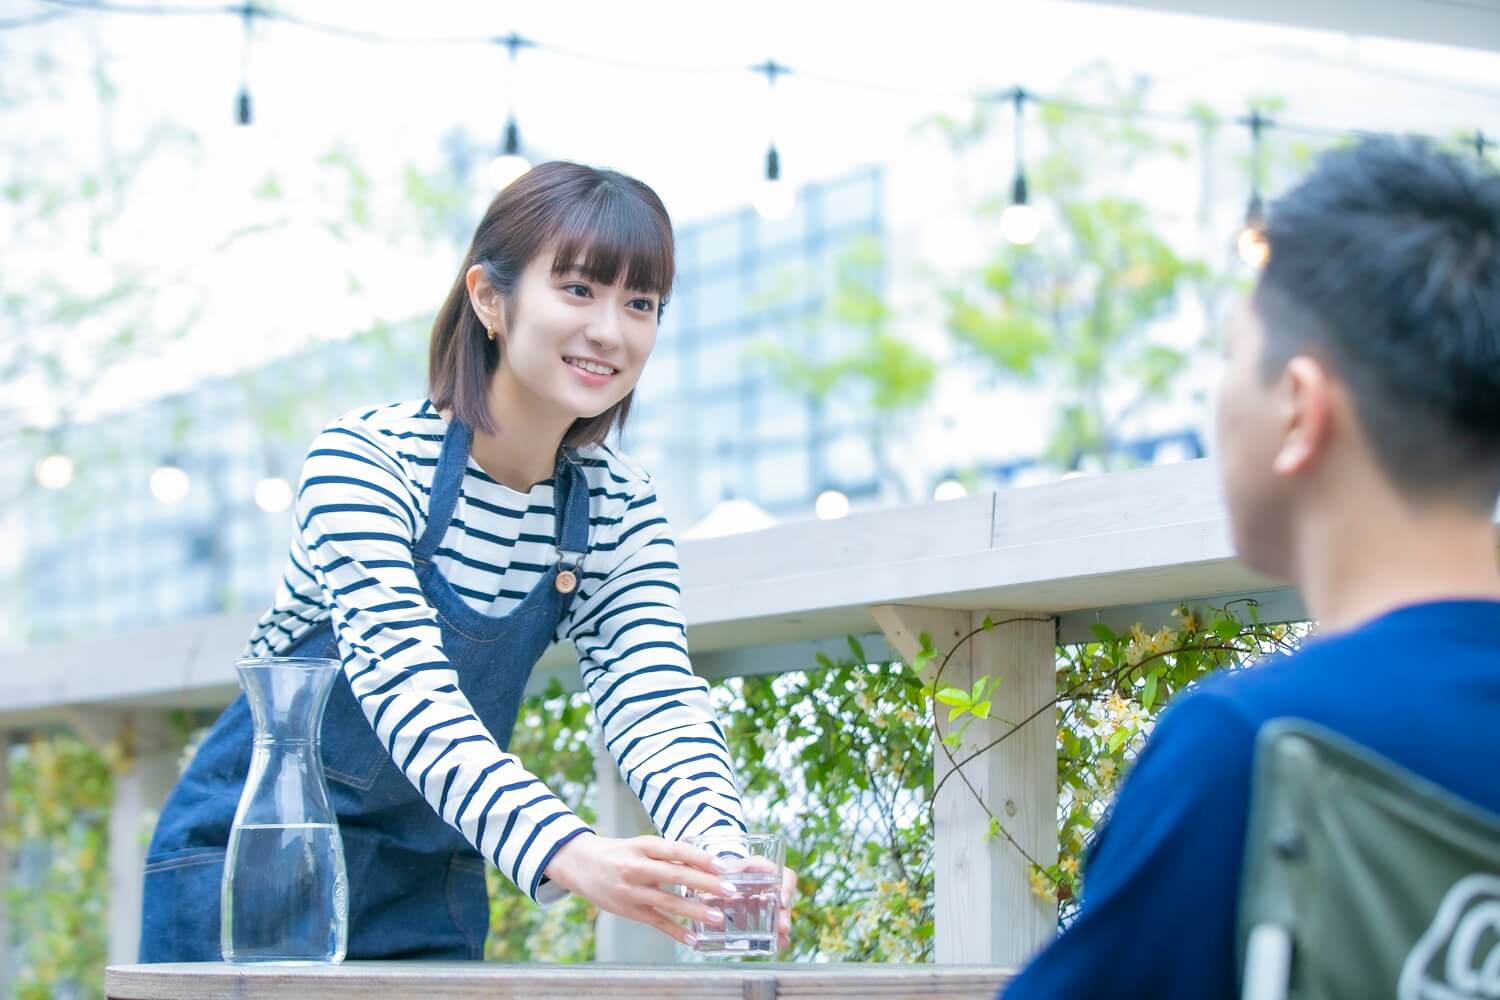 千葉県 の人気バイト アルバイト求人を探す マイナビバイトでバイト情報探し